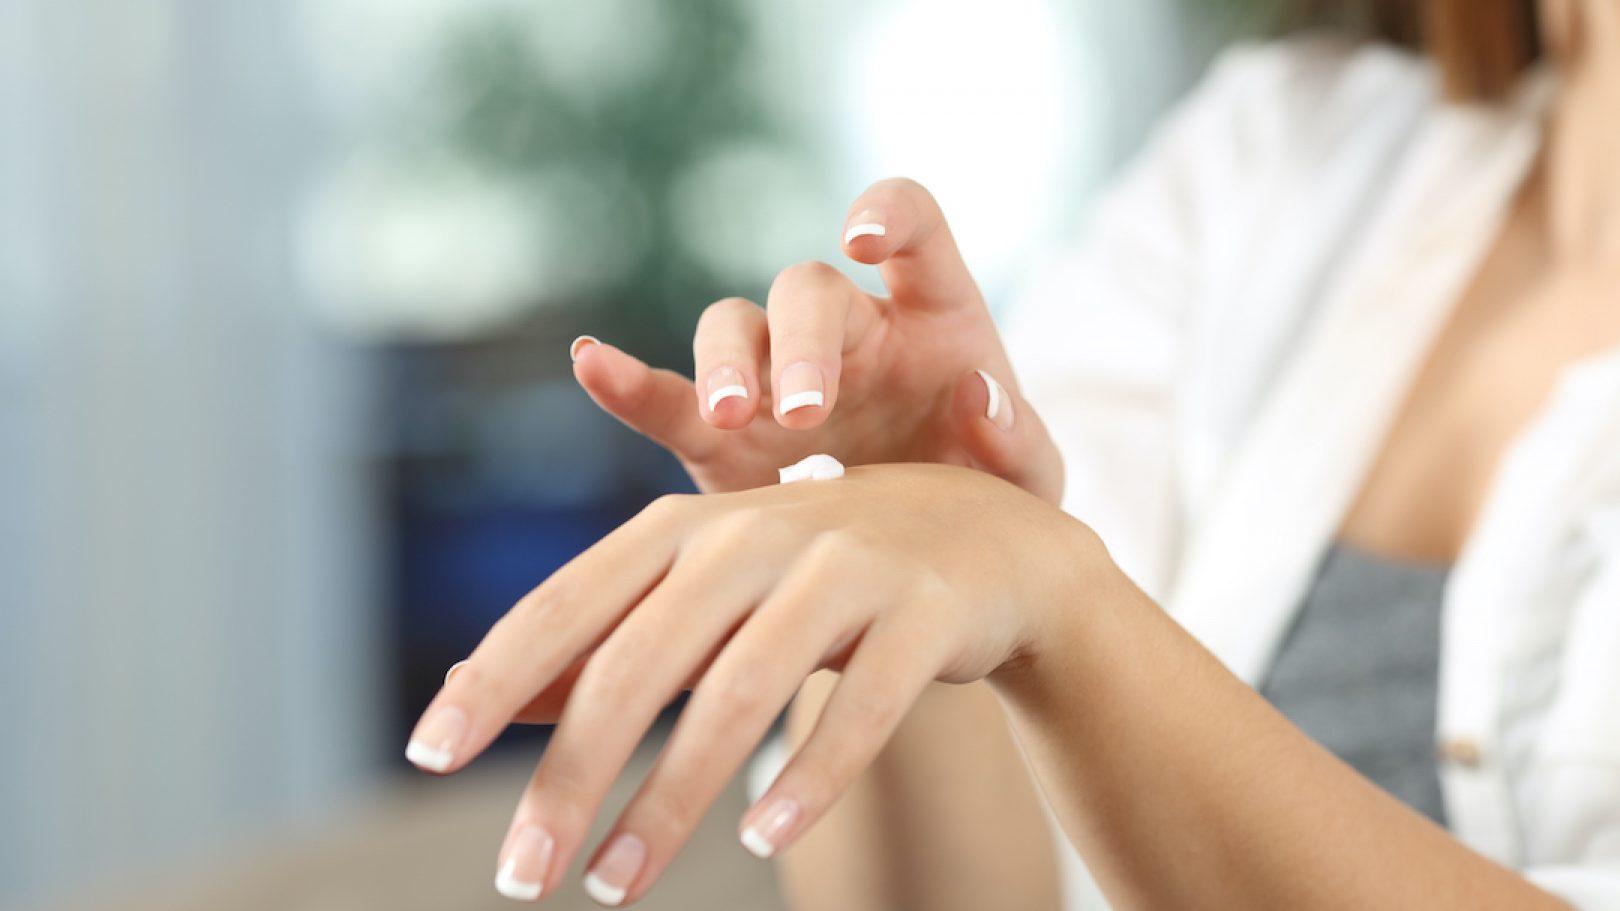 Zaboravite na skupu kozmetiku i tretmane: Namirnica iz kuhinje podmladit će kožu na rukama